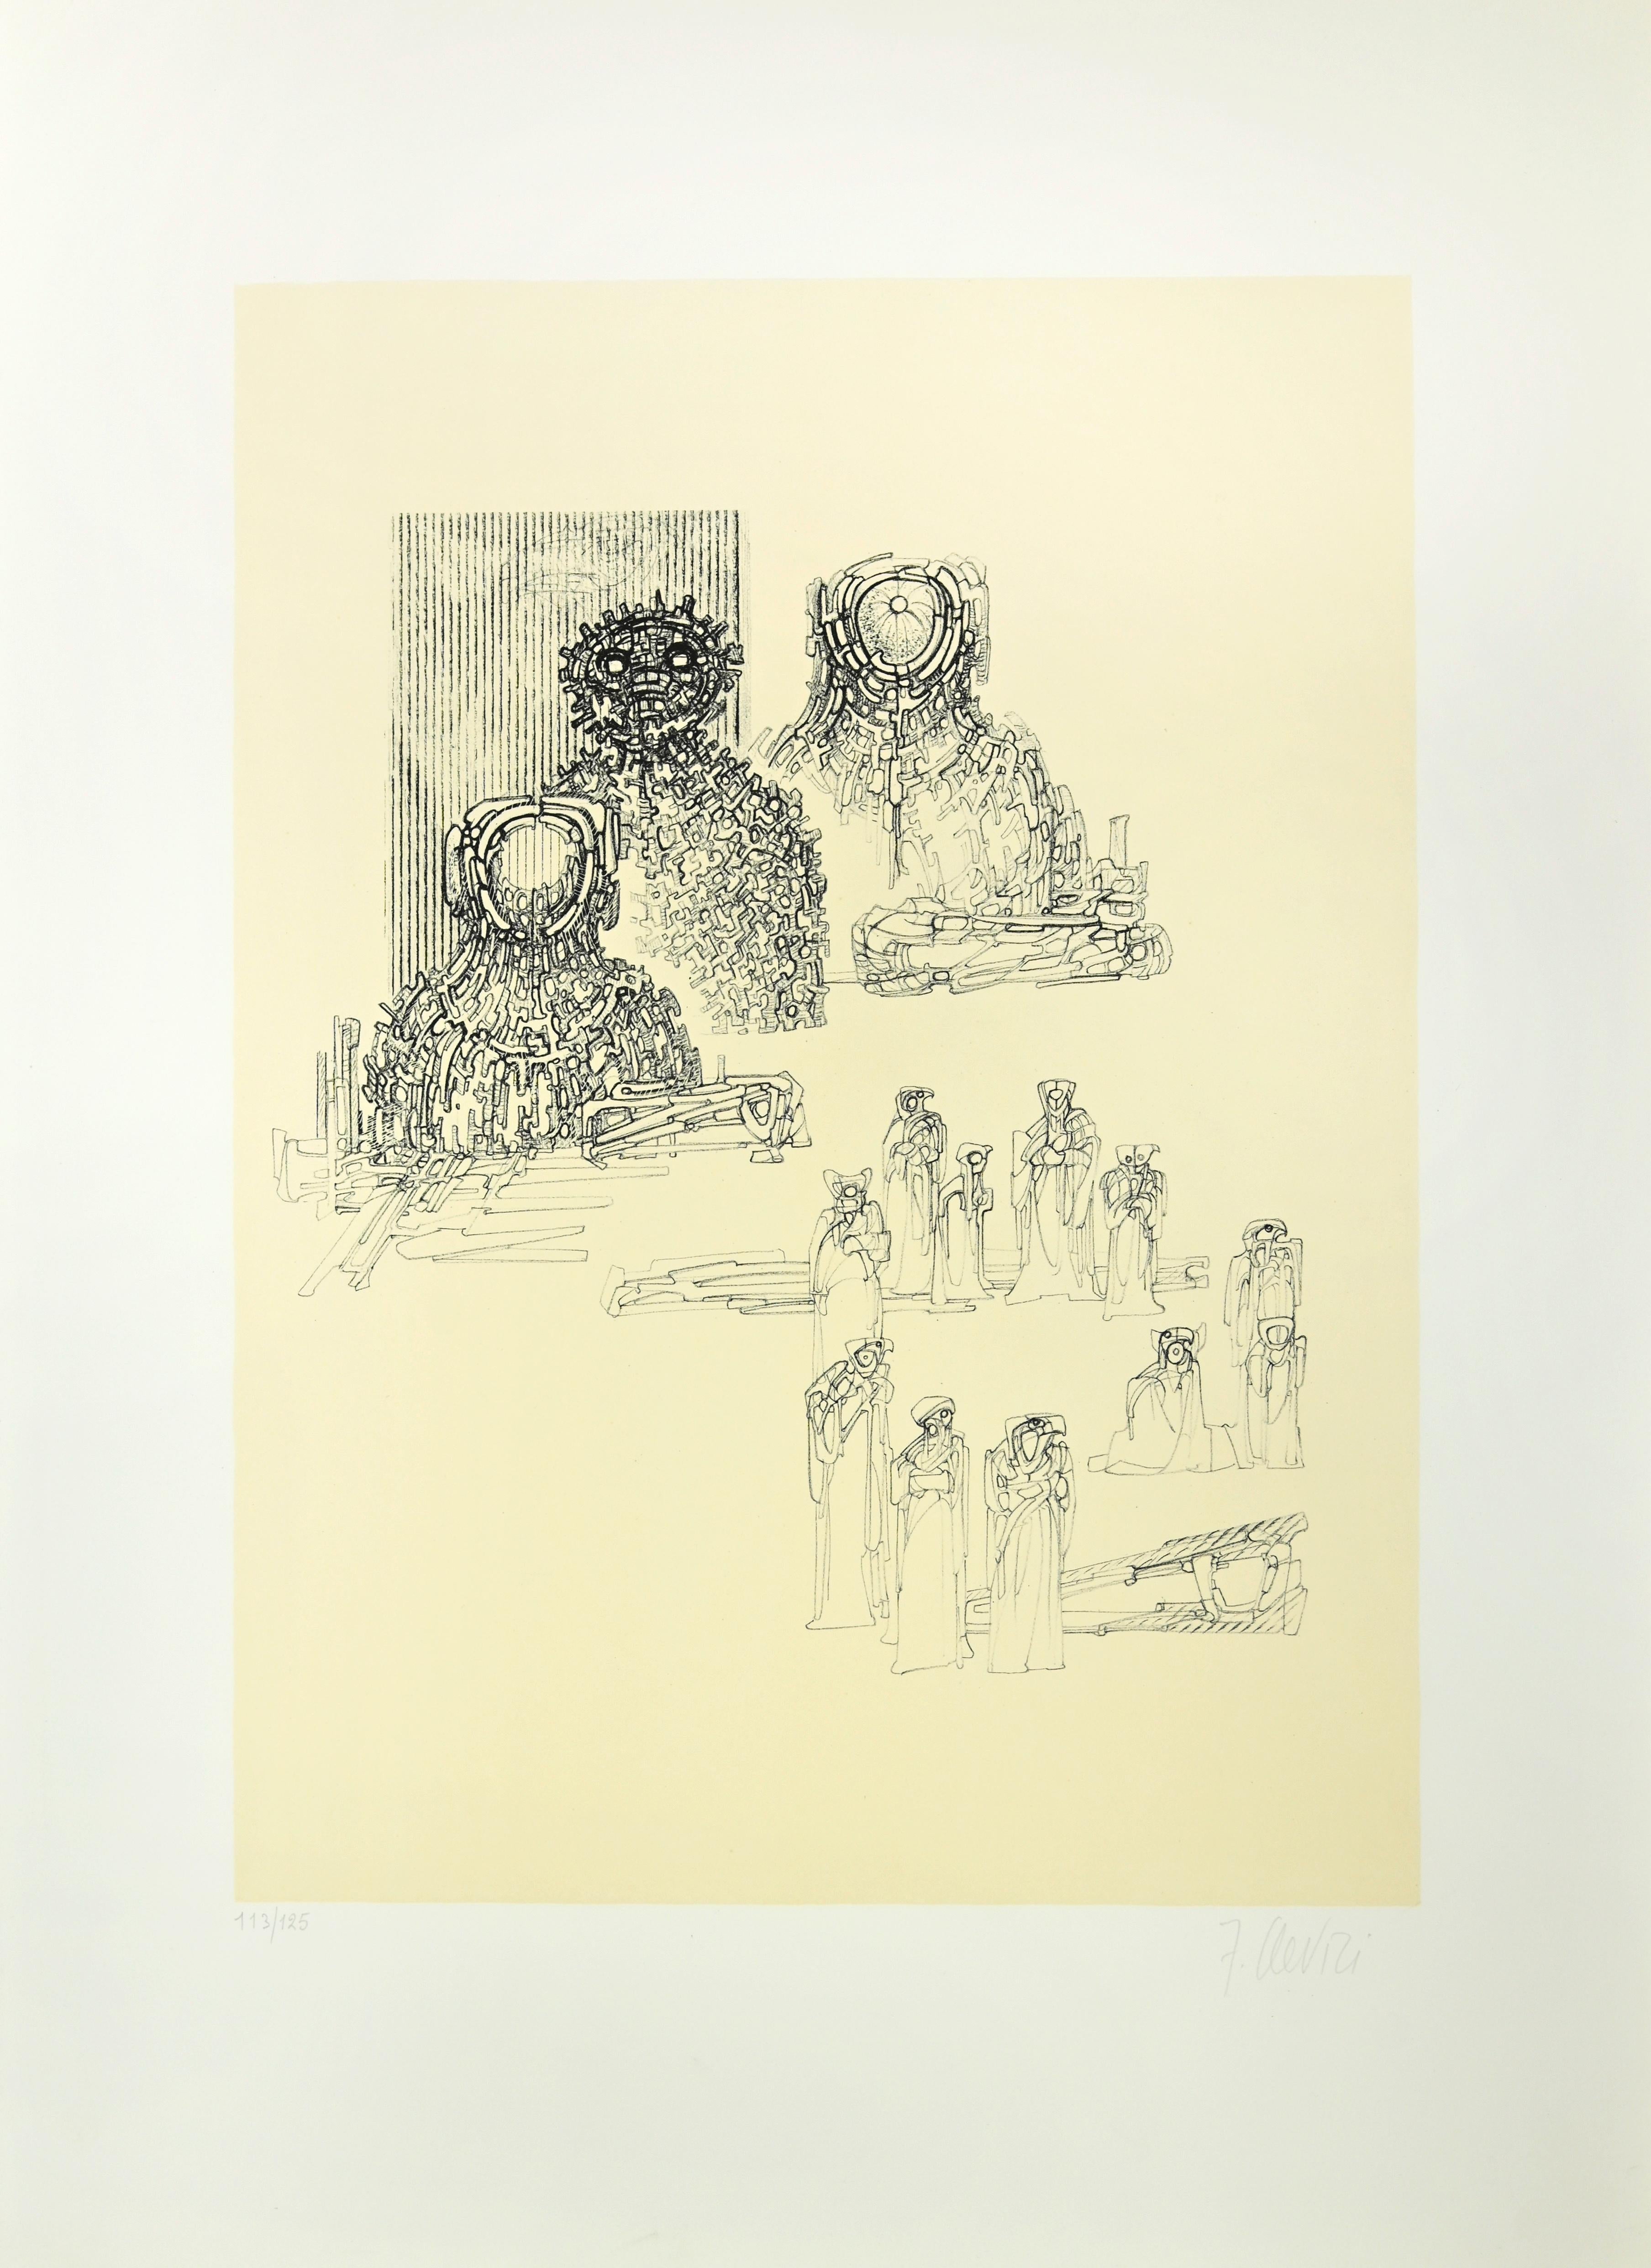 La composition gestuelle est une estampe réalisée par Fabrizio Clerici dans les années 1970.

Lithographie sur papier.

Signé à la main et numéroté, édition de 125 tirages.

L'œuvre est réalisée à l'aide d'un éventail de lignes de planches et de